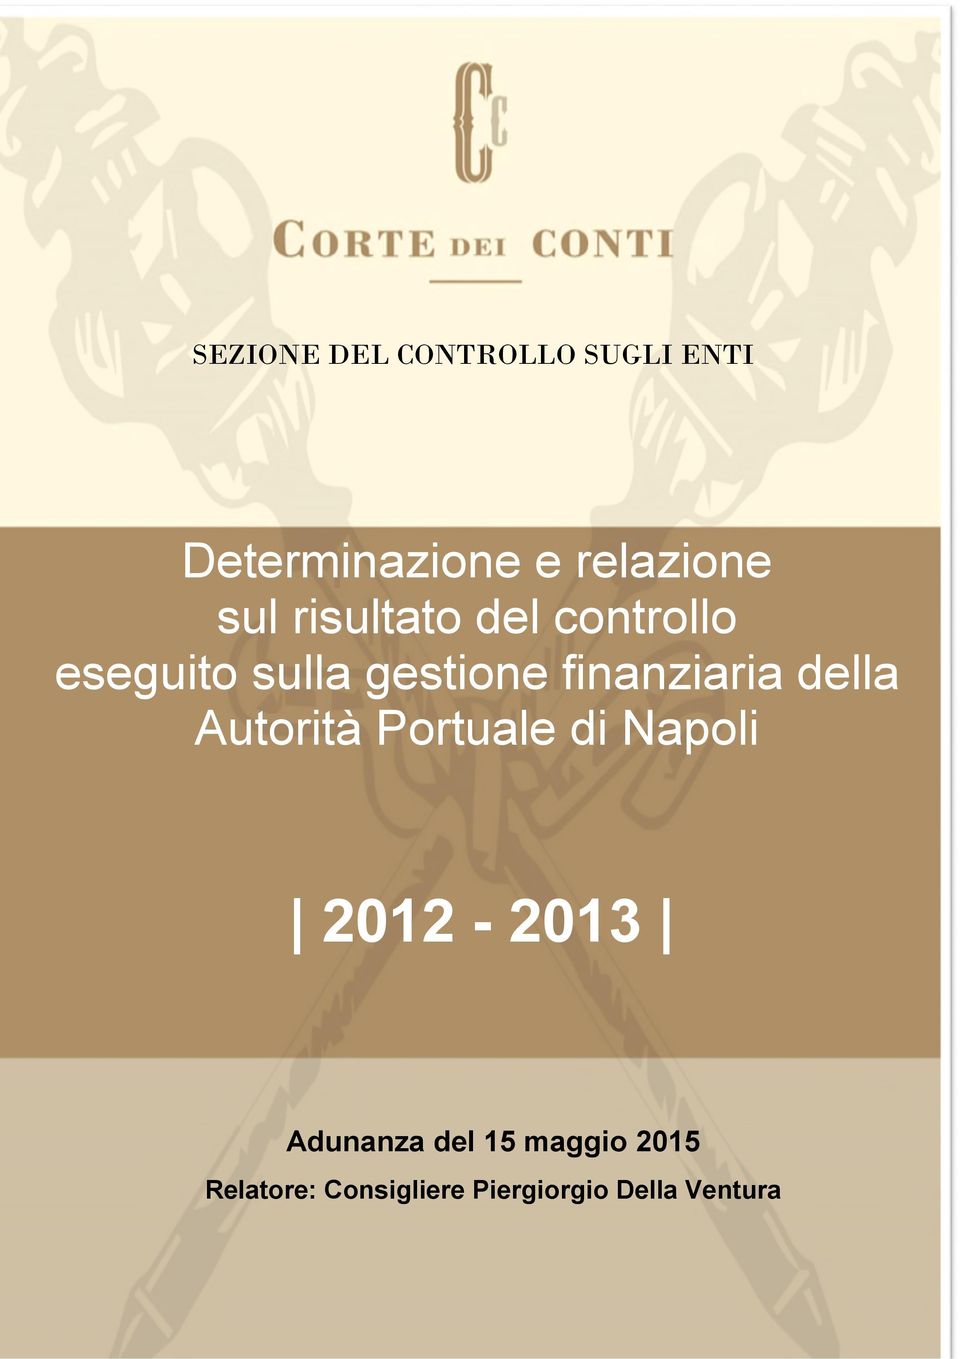 finanziaria della Autorità Portuale di Napoli 2012-2013